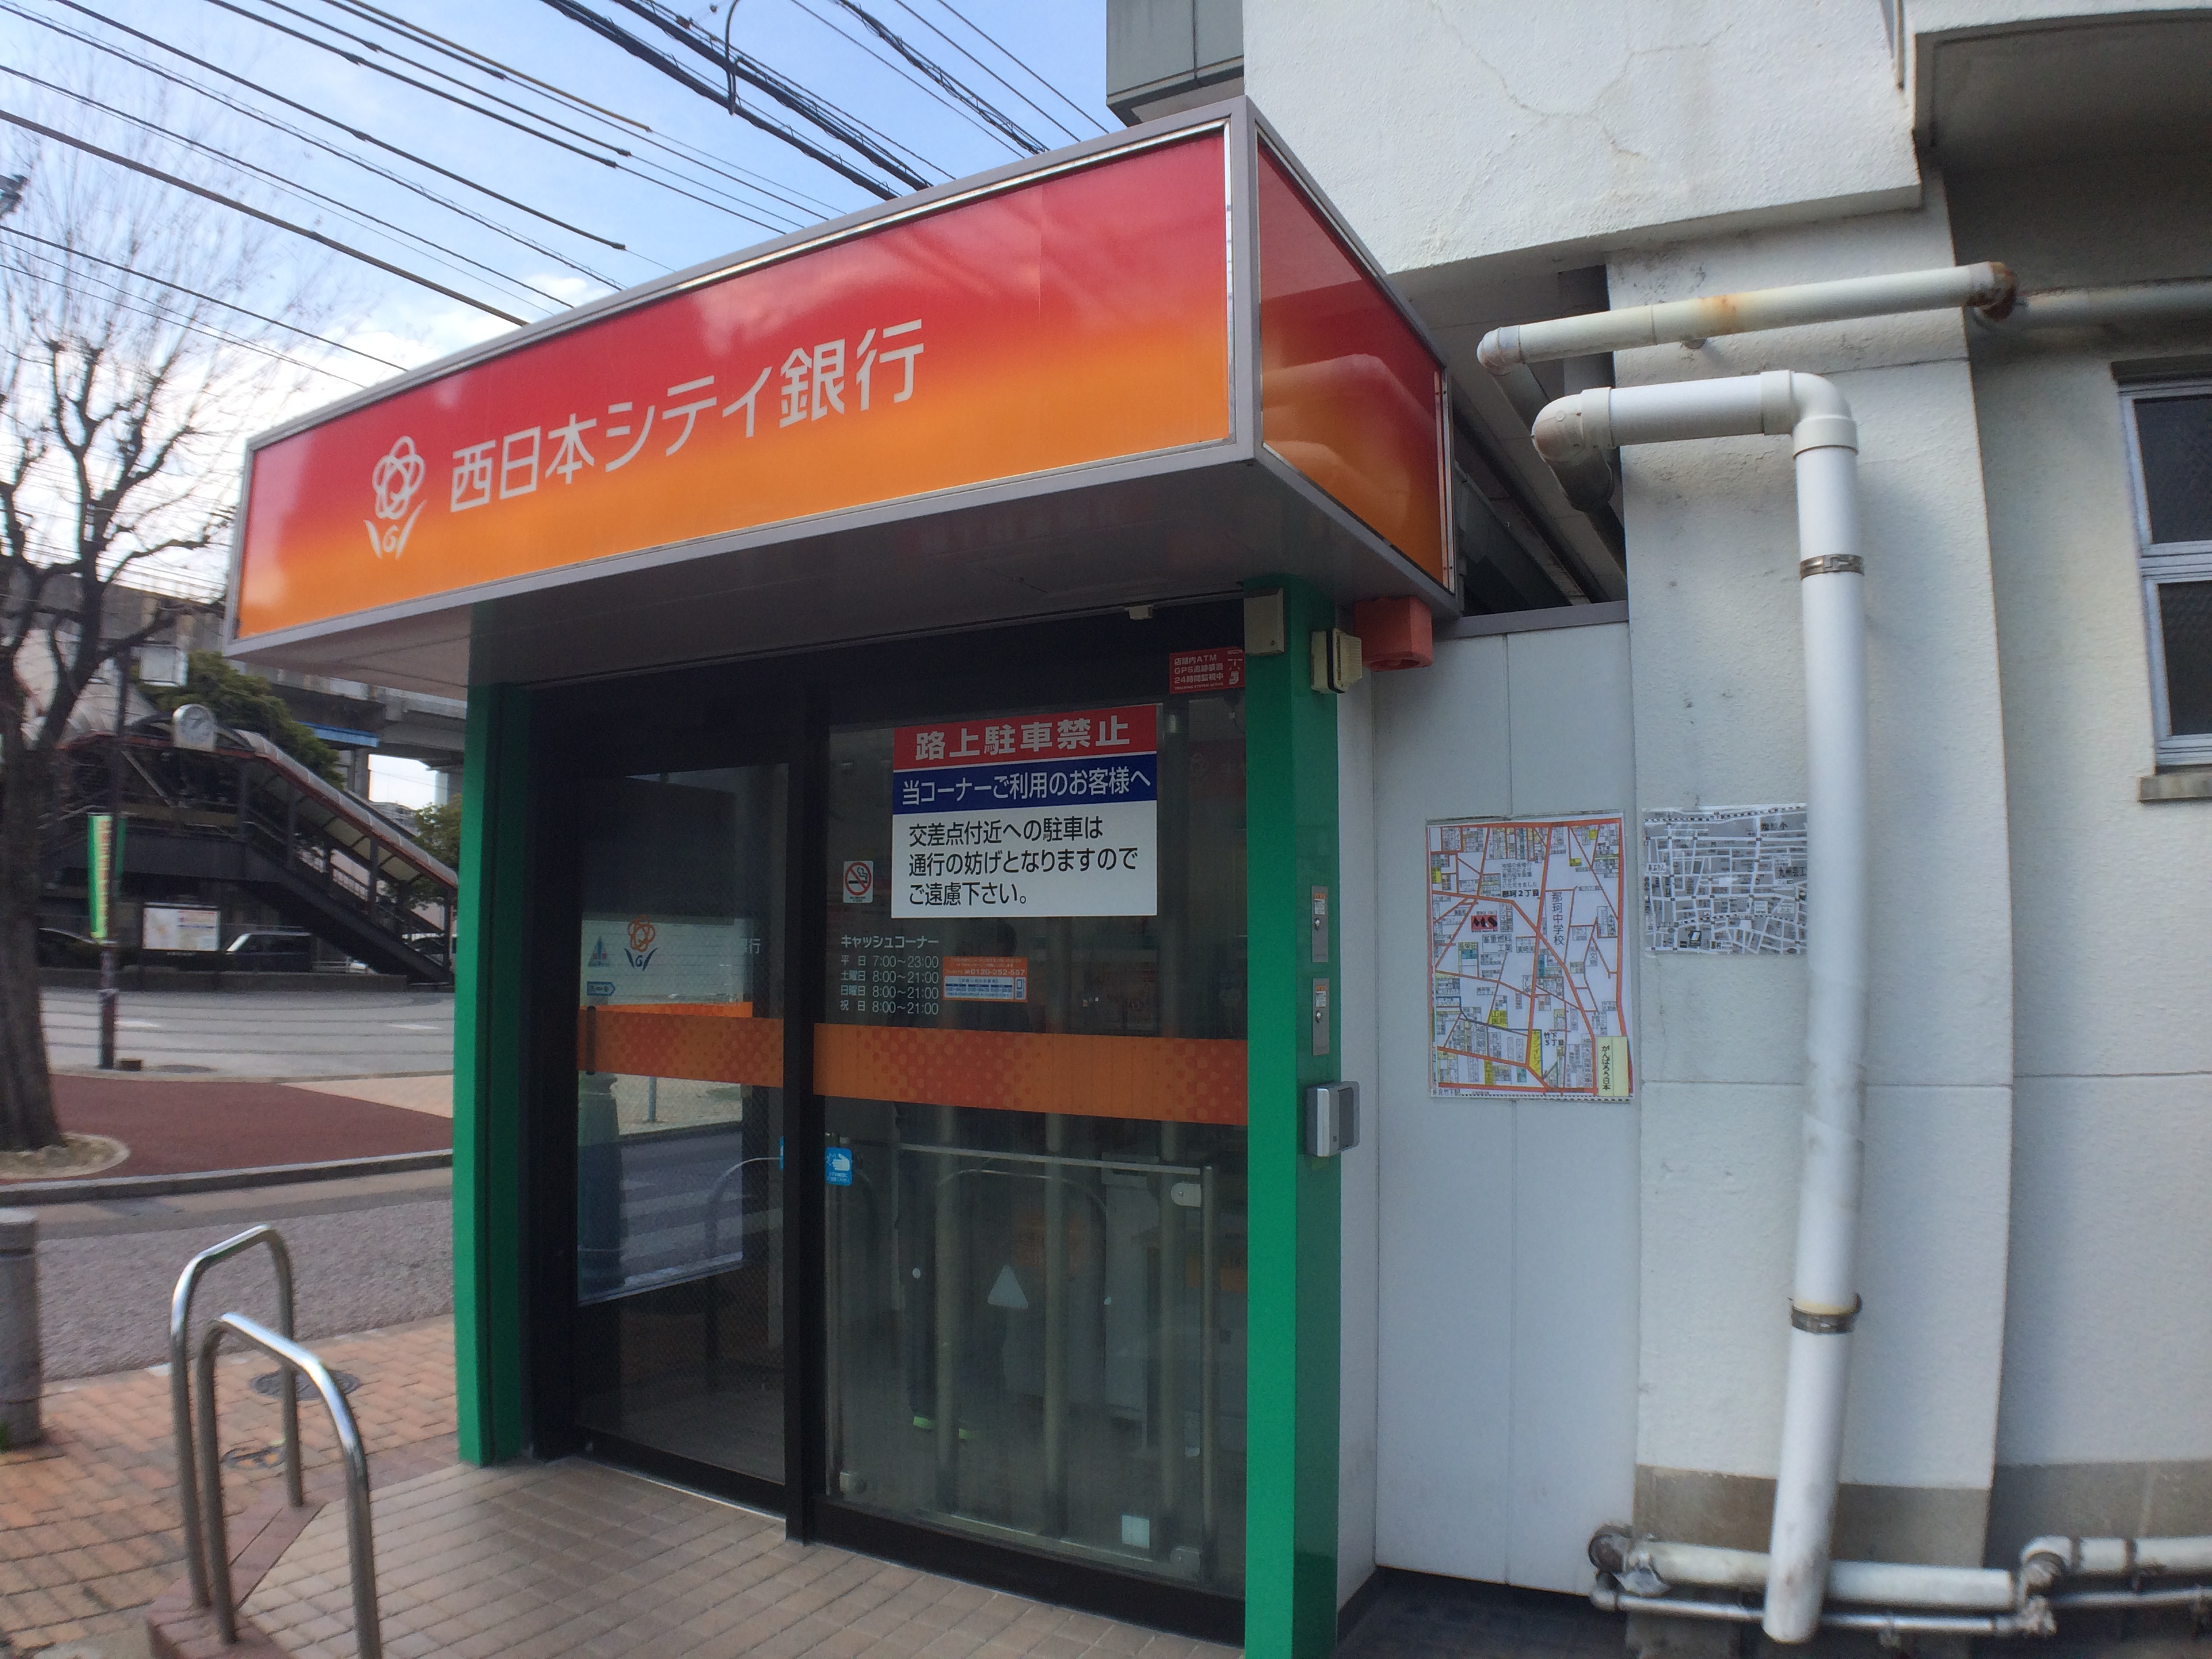 銀行：西日本シティ銀行 竹下駅前さく病院 (ATM)　976m